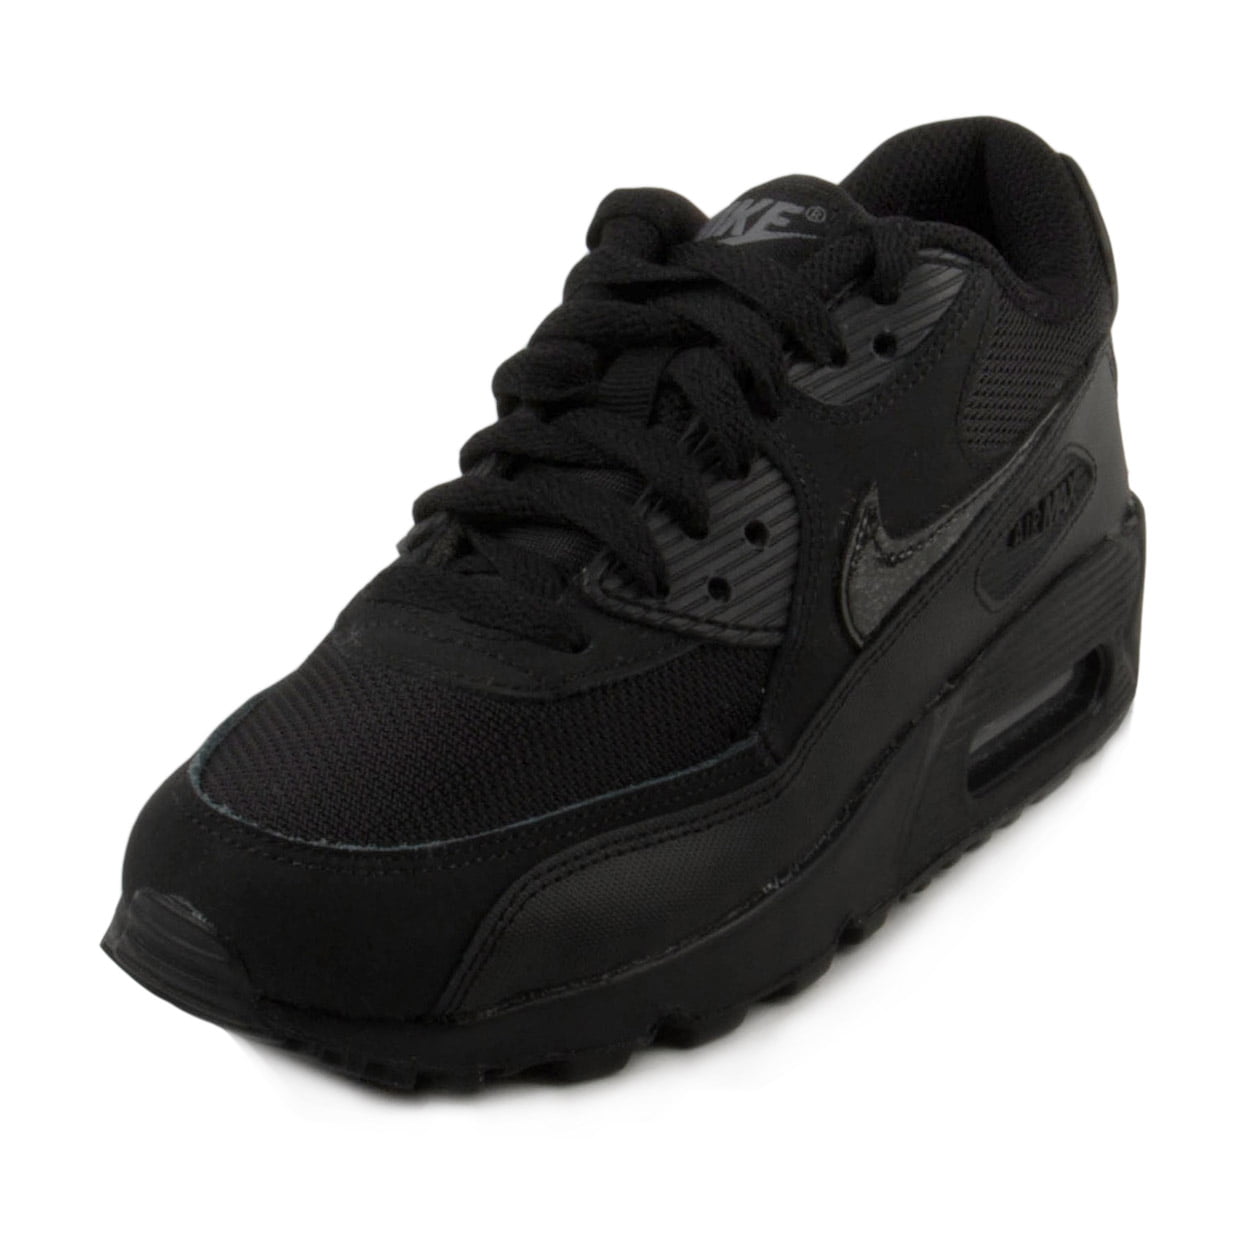 Nike Boys Air Max 90 Mesh "Black" Black/Cool Grey - Walmart.com